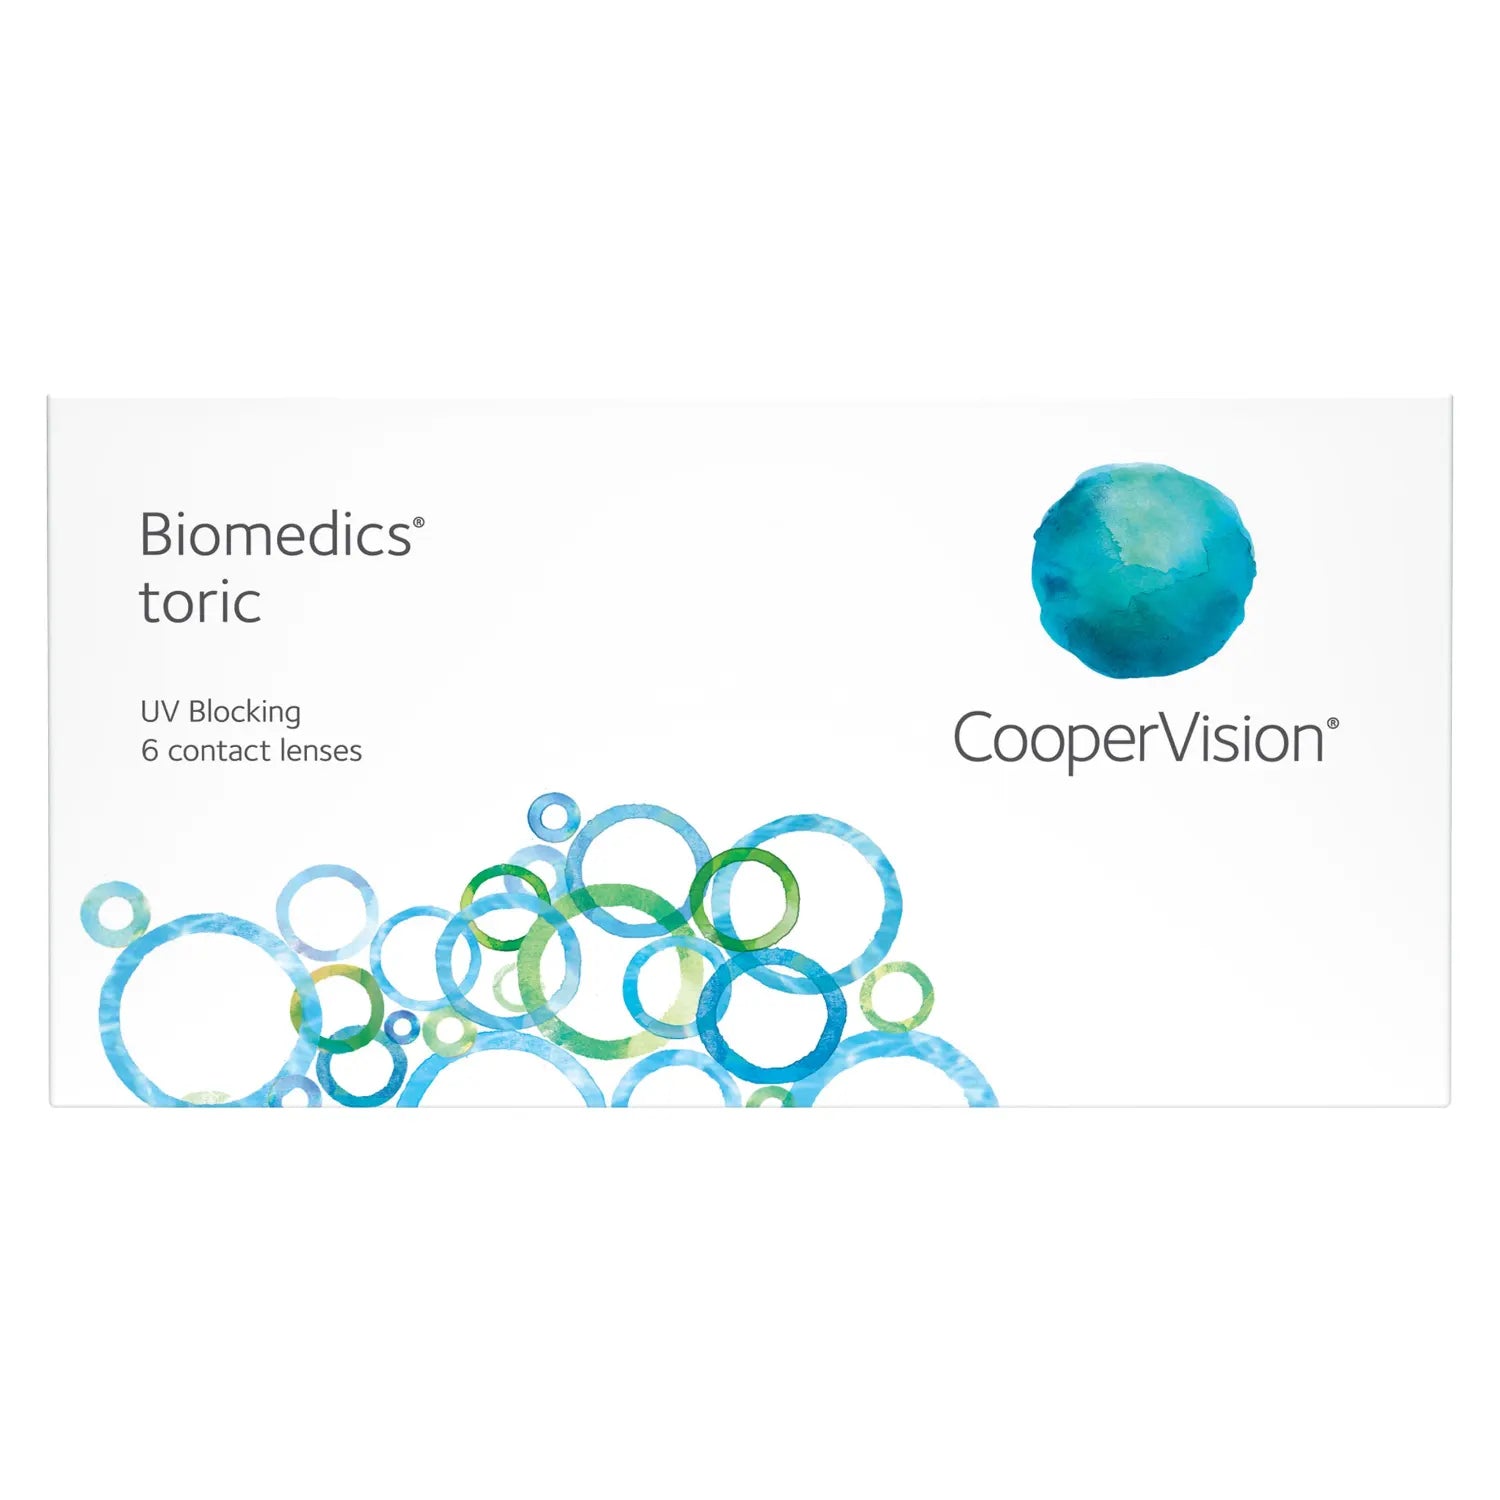 Biomedics 55 soft contact lenses